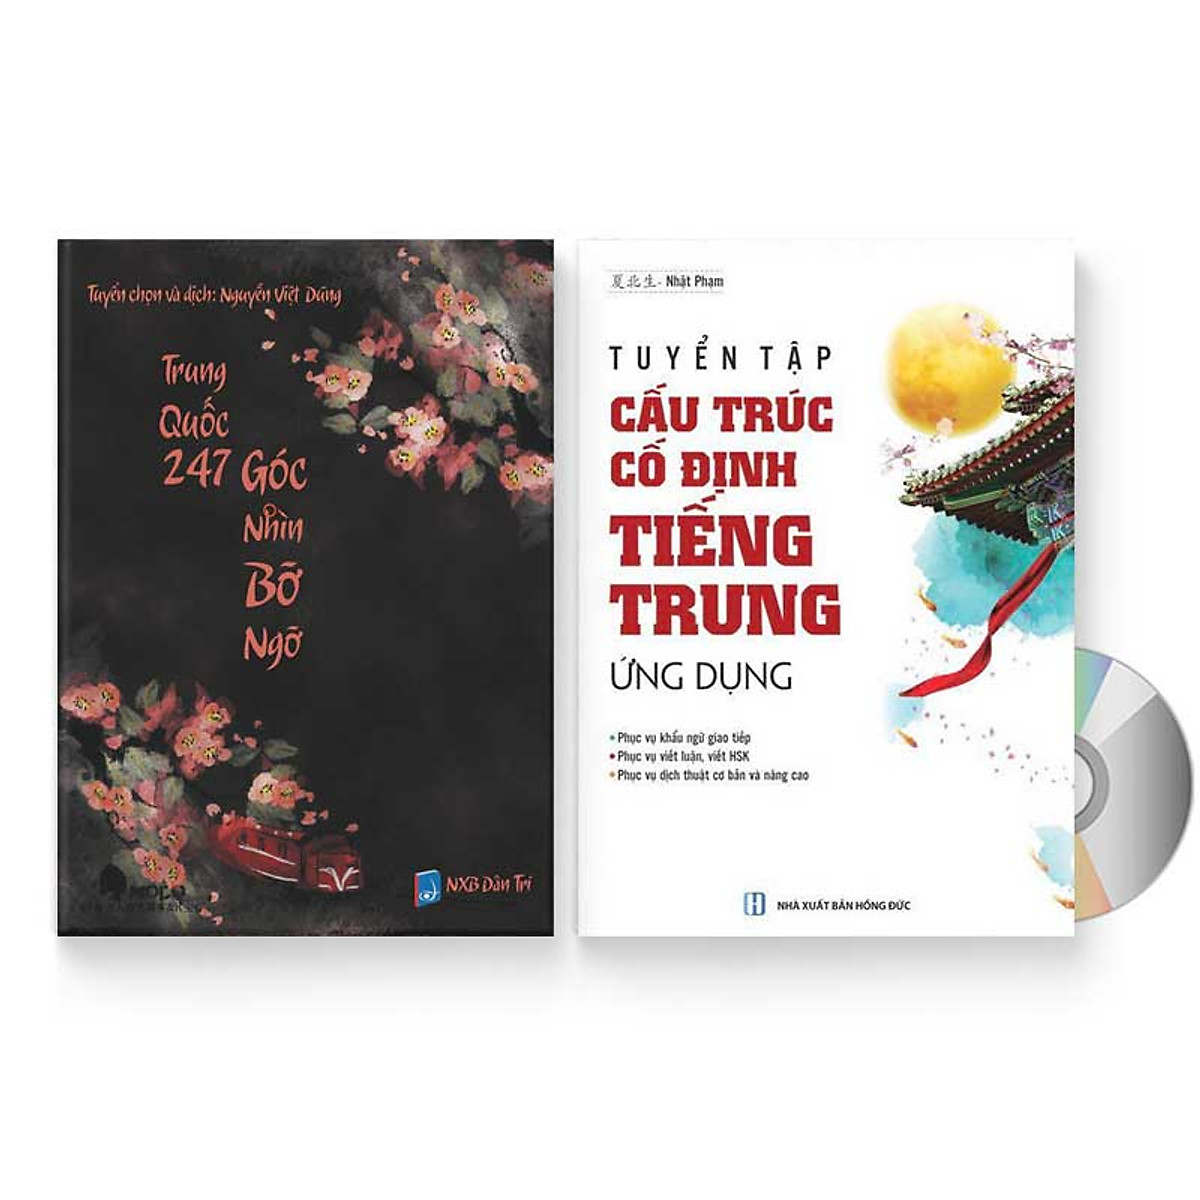 Combo 2 sách: Trung Quốc 247: Góc nhìn bỡ ngỡ (Song ngữ Trung - Việt có Pinyin) + Tự học Ngữ Pháp: Tuyển tập Cấu trúc cố định tiếng Trung ứng dụng + DVD quà tặng